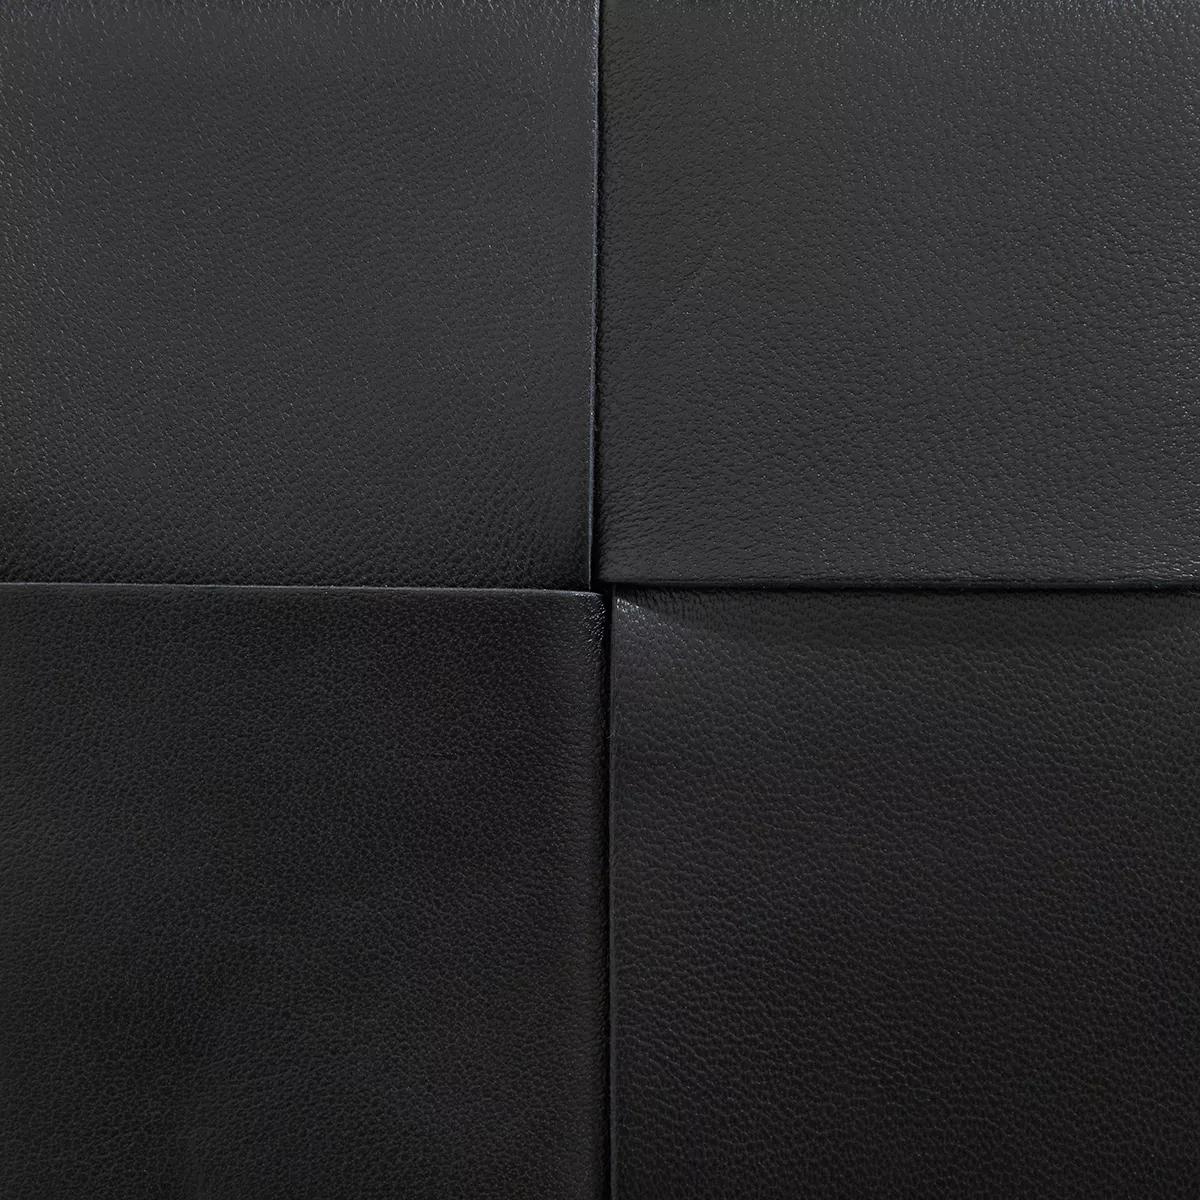 Bottega Veneta Crossbody bags Mini Cassette Crossbody Bag in zwart